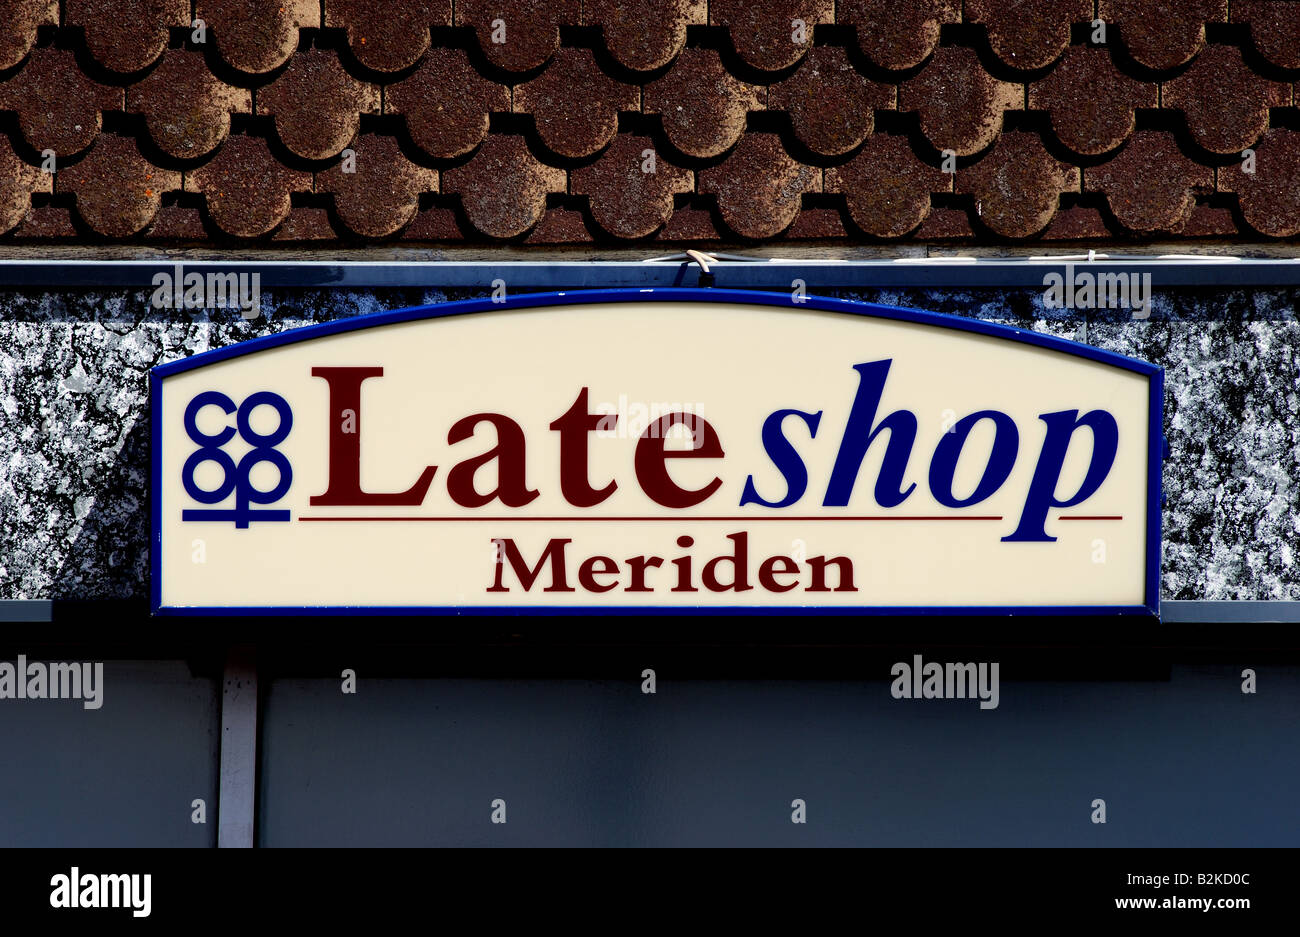 Co-op Late shop sign, Meriden, West Midlands, England, UK Stock Photo